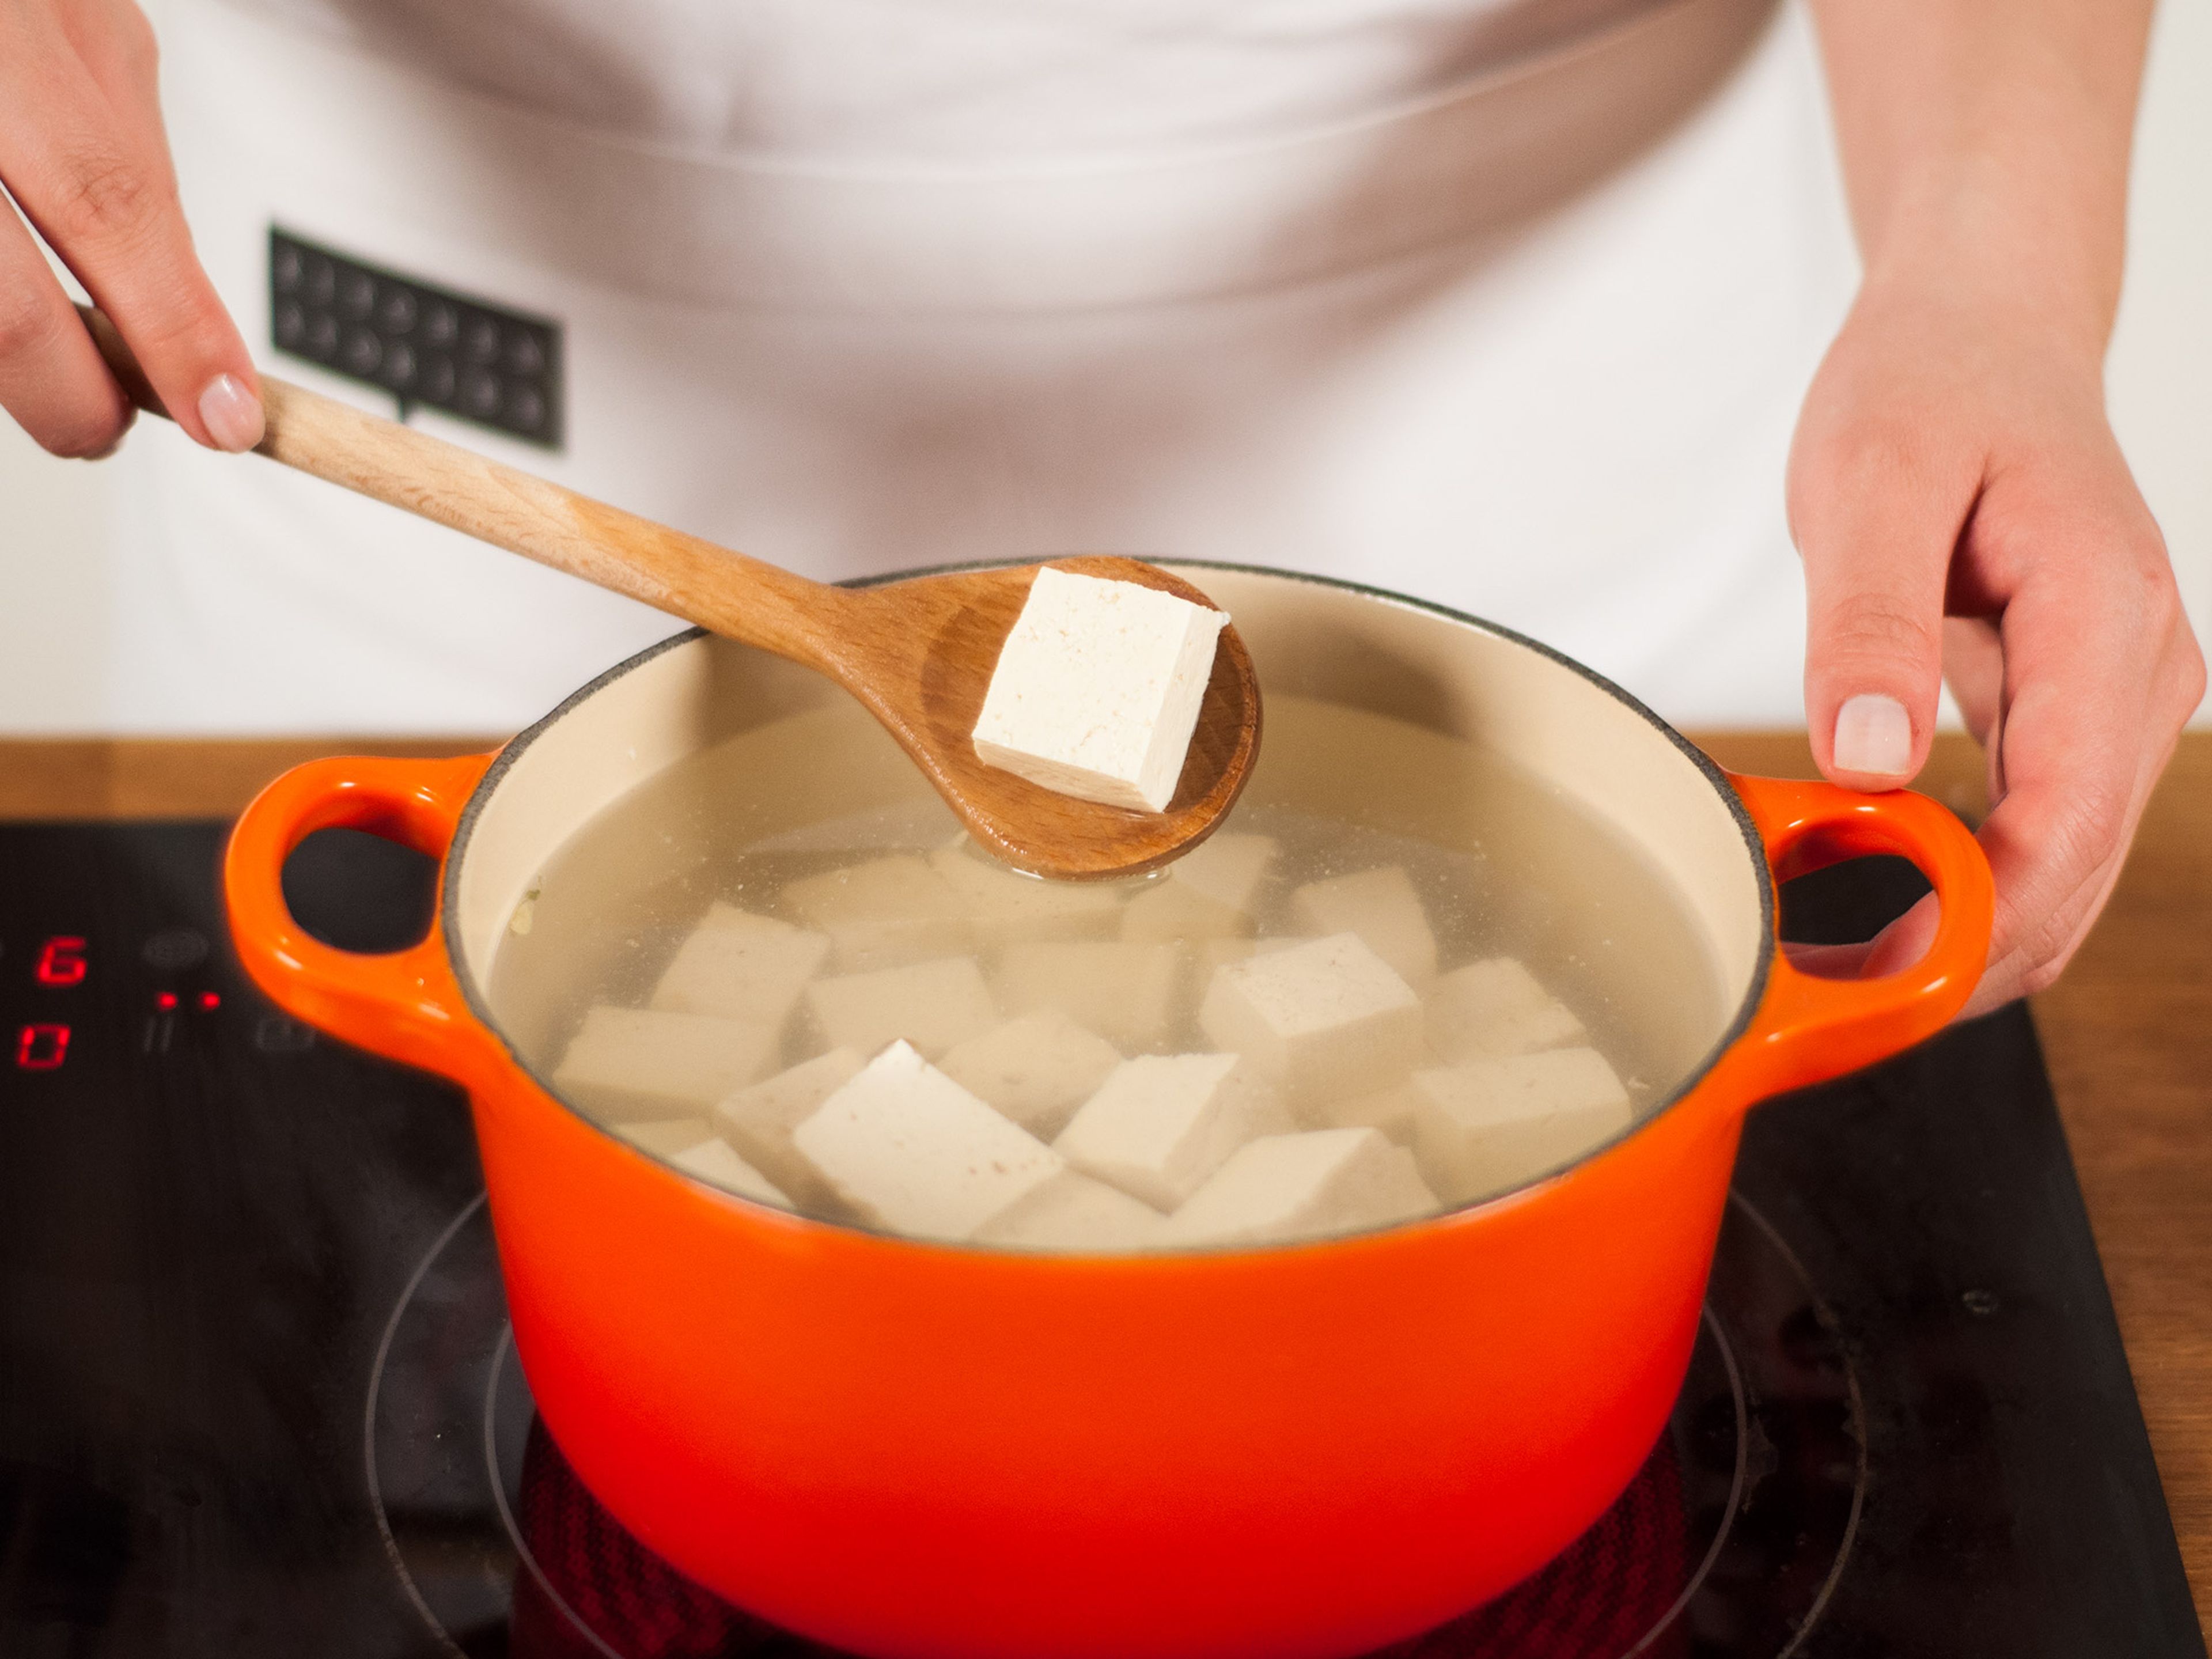 Wasser in einen kleinen Topf geben und zum Kochen bringen. Tofu ins kochende Wasser geben und für ca. 3-5 Min., bis die Tofuwürfel  an die Wasseroberfläche steigen, kochen. Abtropfen lassen.